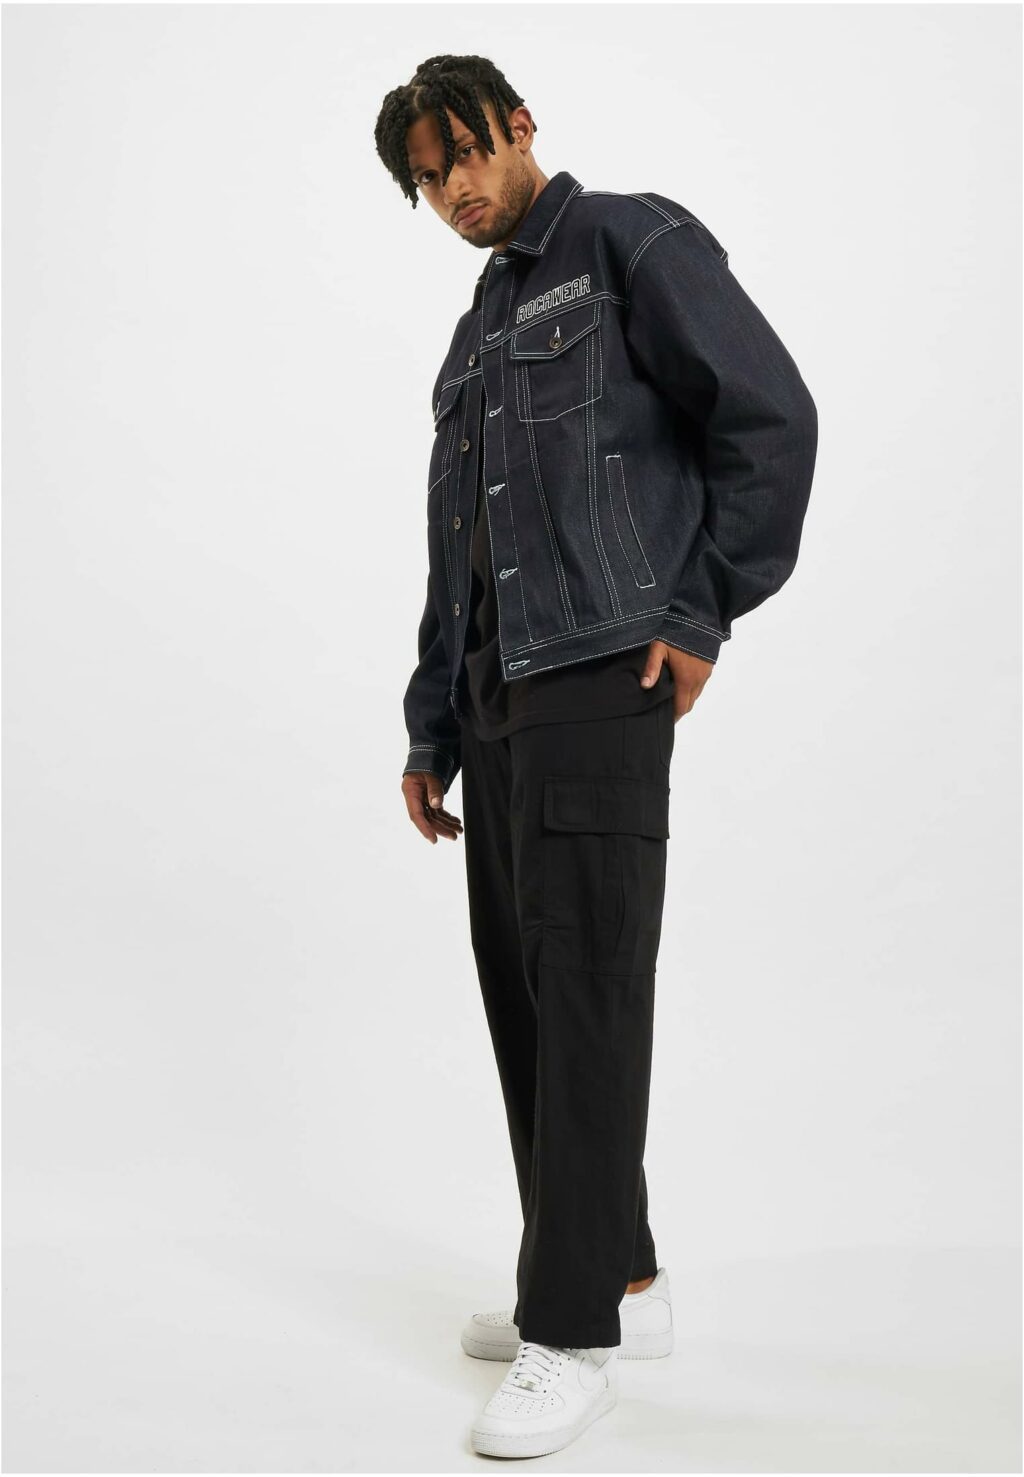 Rocawear Brigthon Jacket indigo RWJA033